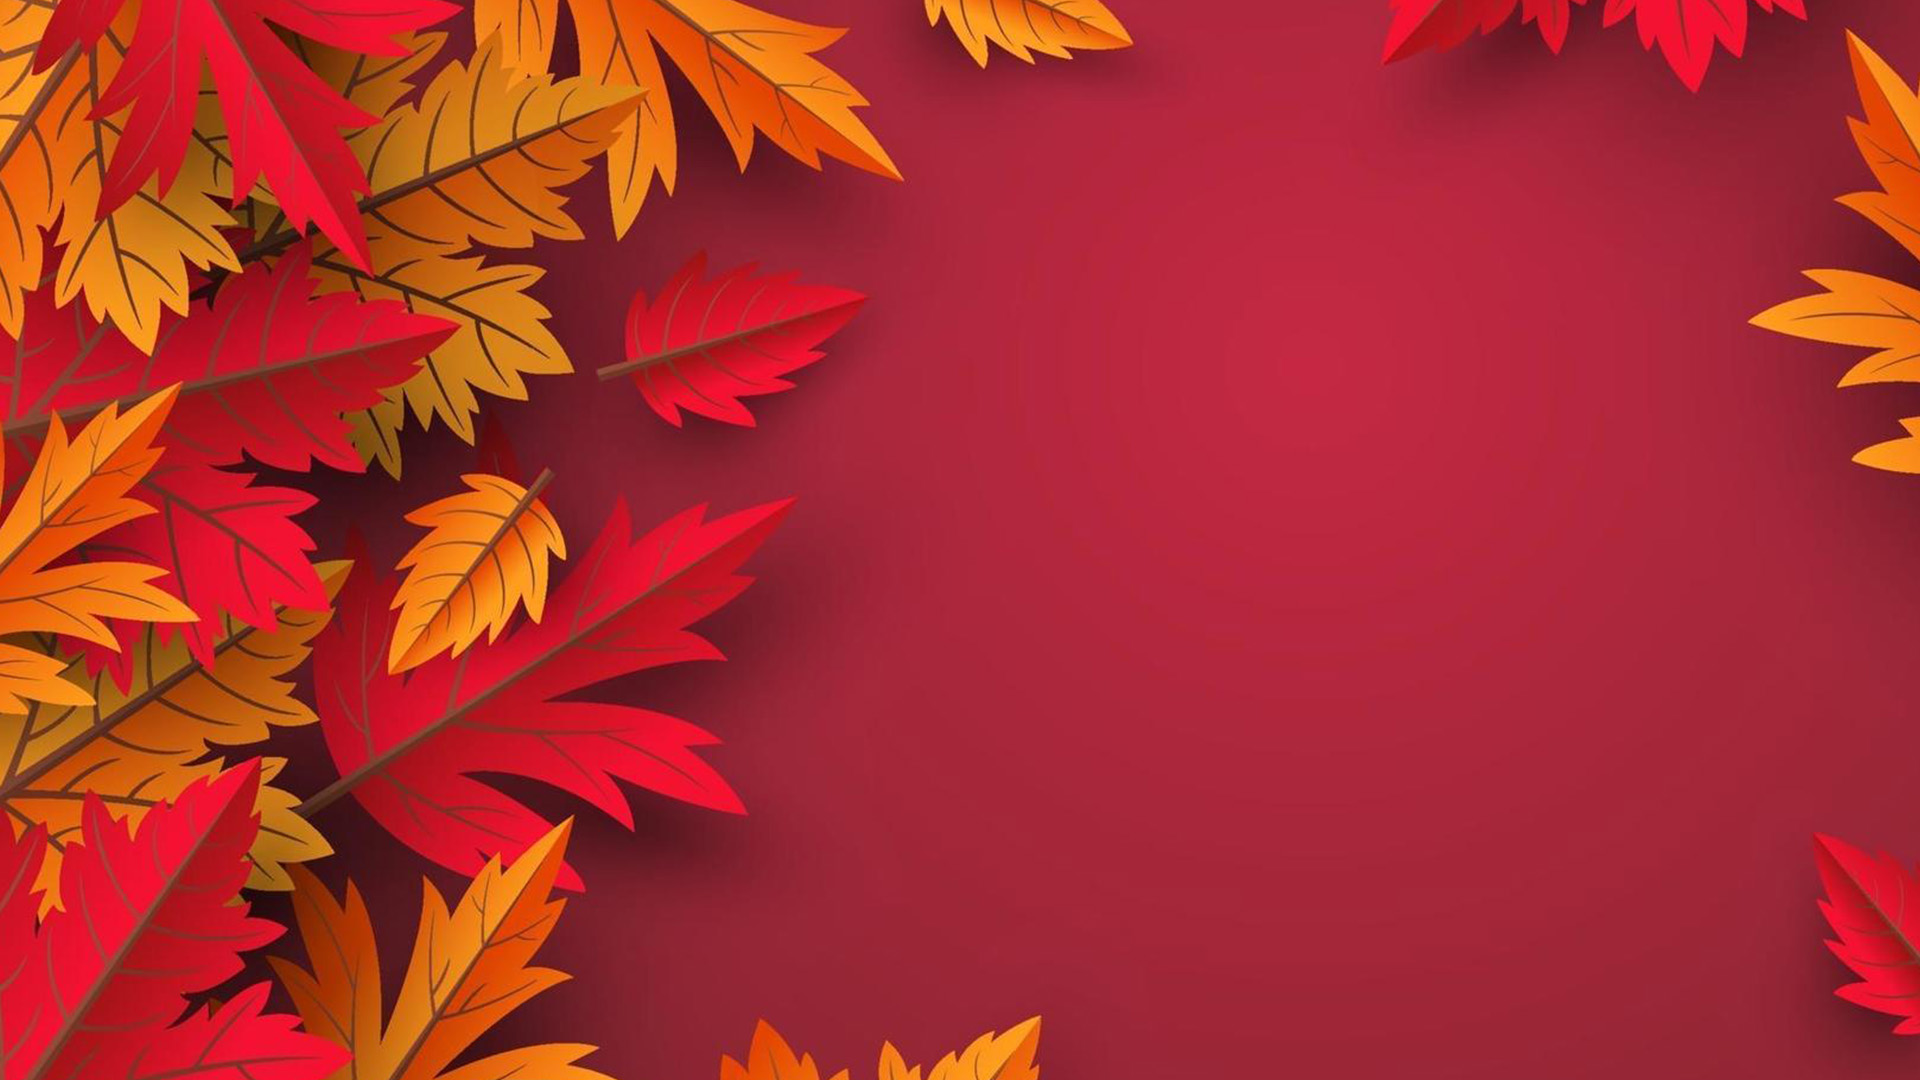 Hãy chiêm ngưỡng bức ảnh với background đẹp lá sẽ đưa bạn đến với một thế giới rực rỡ sắc màu của mùa thu. Những chiếc lá vàng và đỏ rực rỡ sẽ làm bạn bị thu hút ngay lập tức và muốn khám phá thêm về bức ảnh đầy phong cảnh đẹp này.